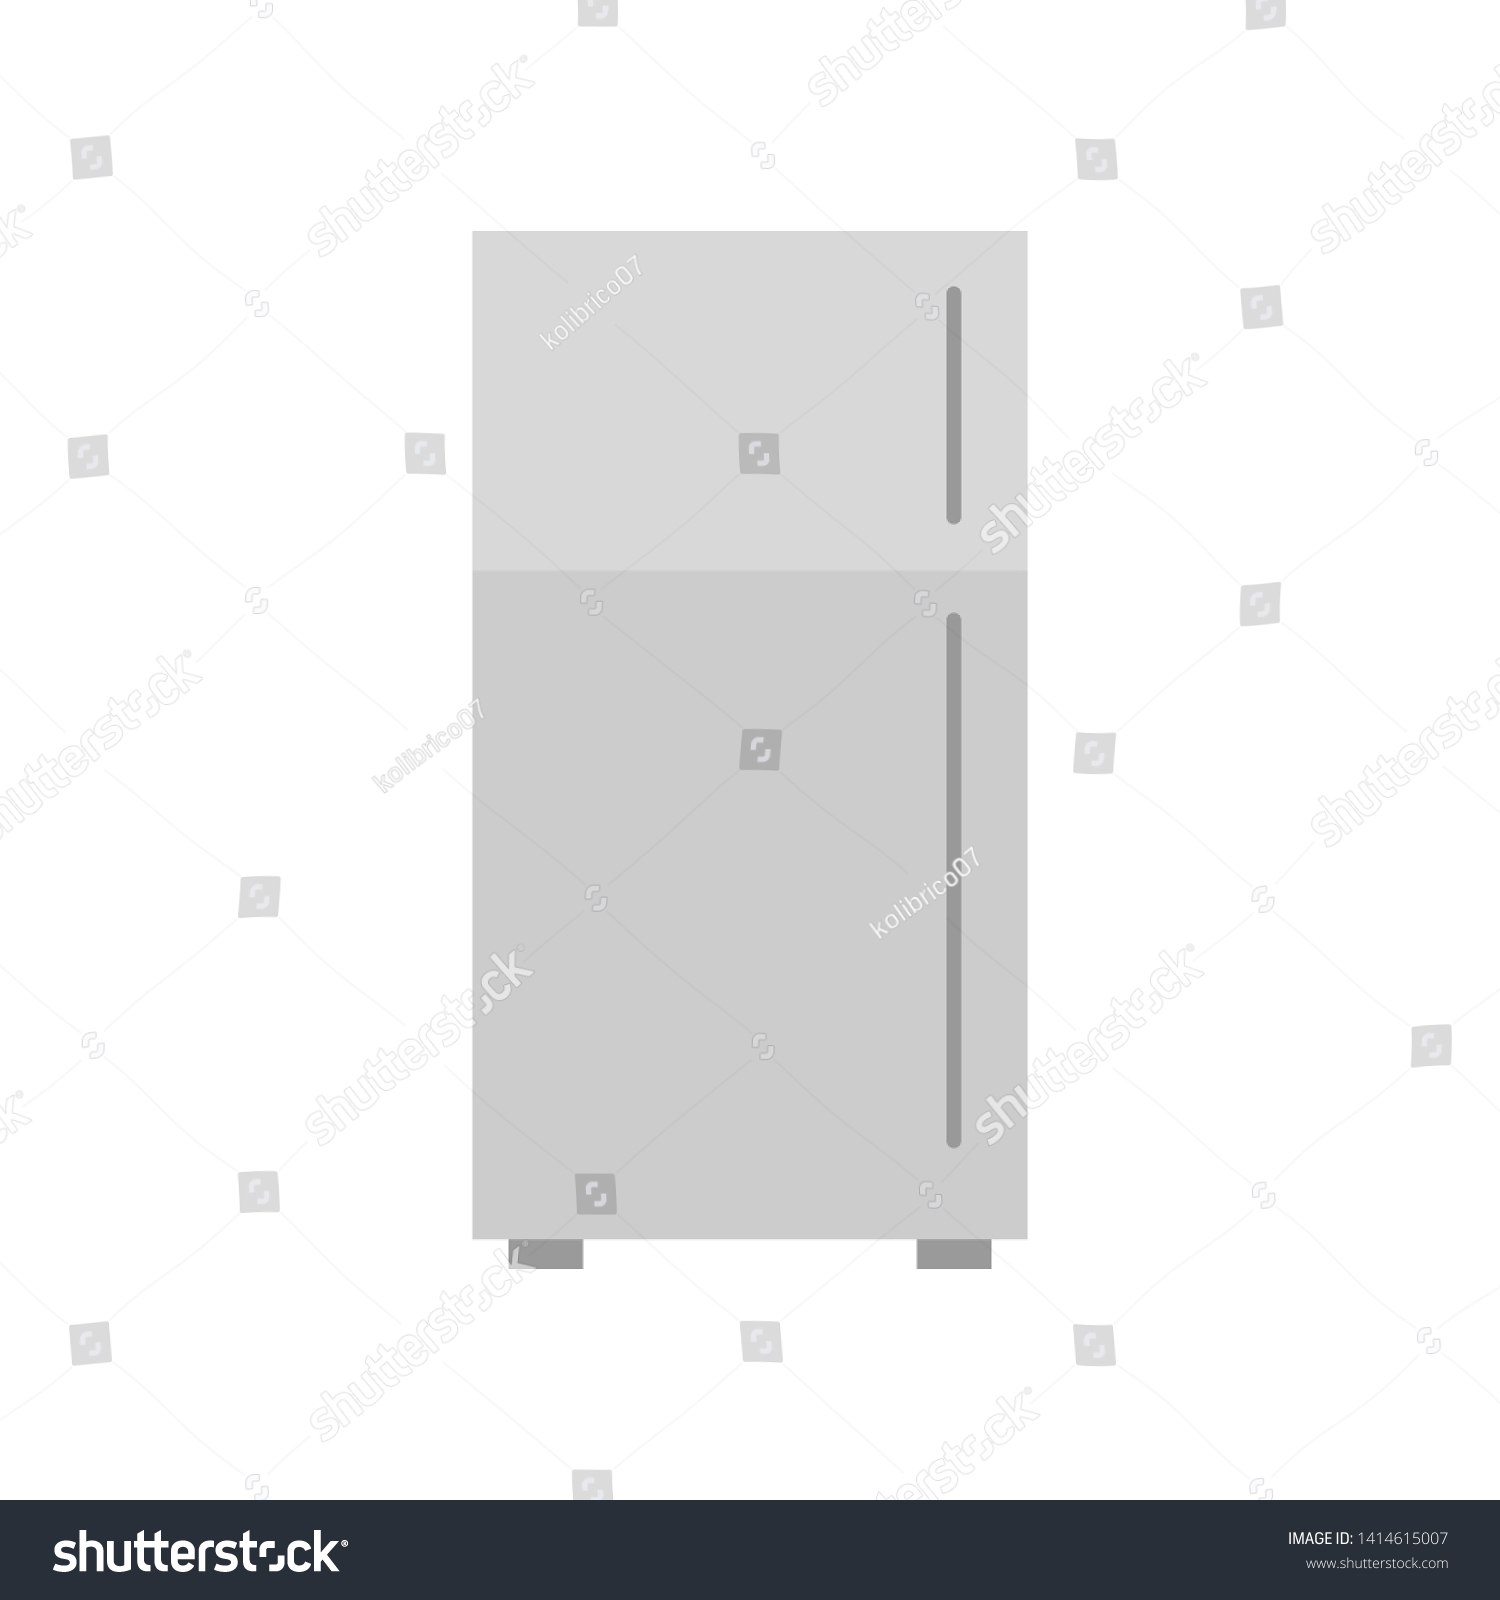 Vector  illustration of gray closed refrigerator. Fridge vector illustration.  #1414615007